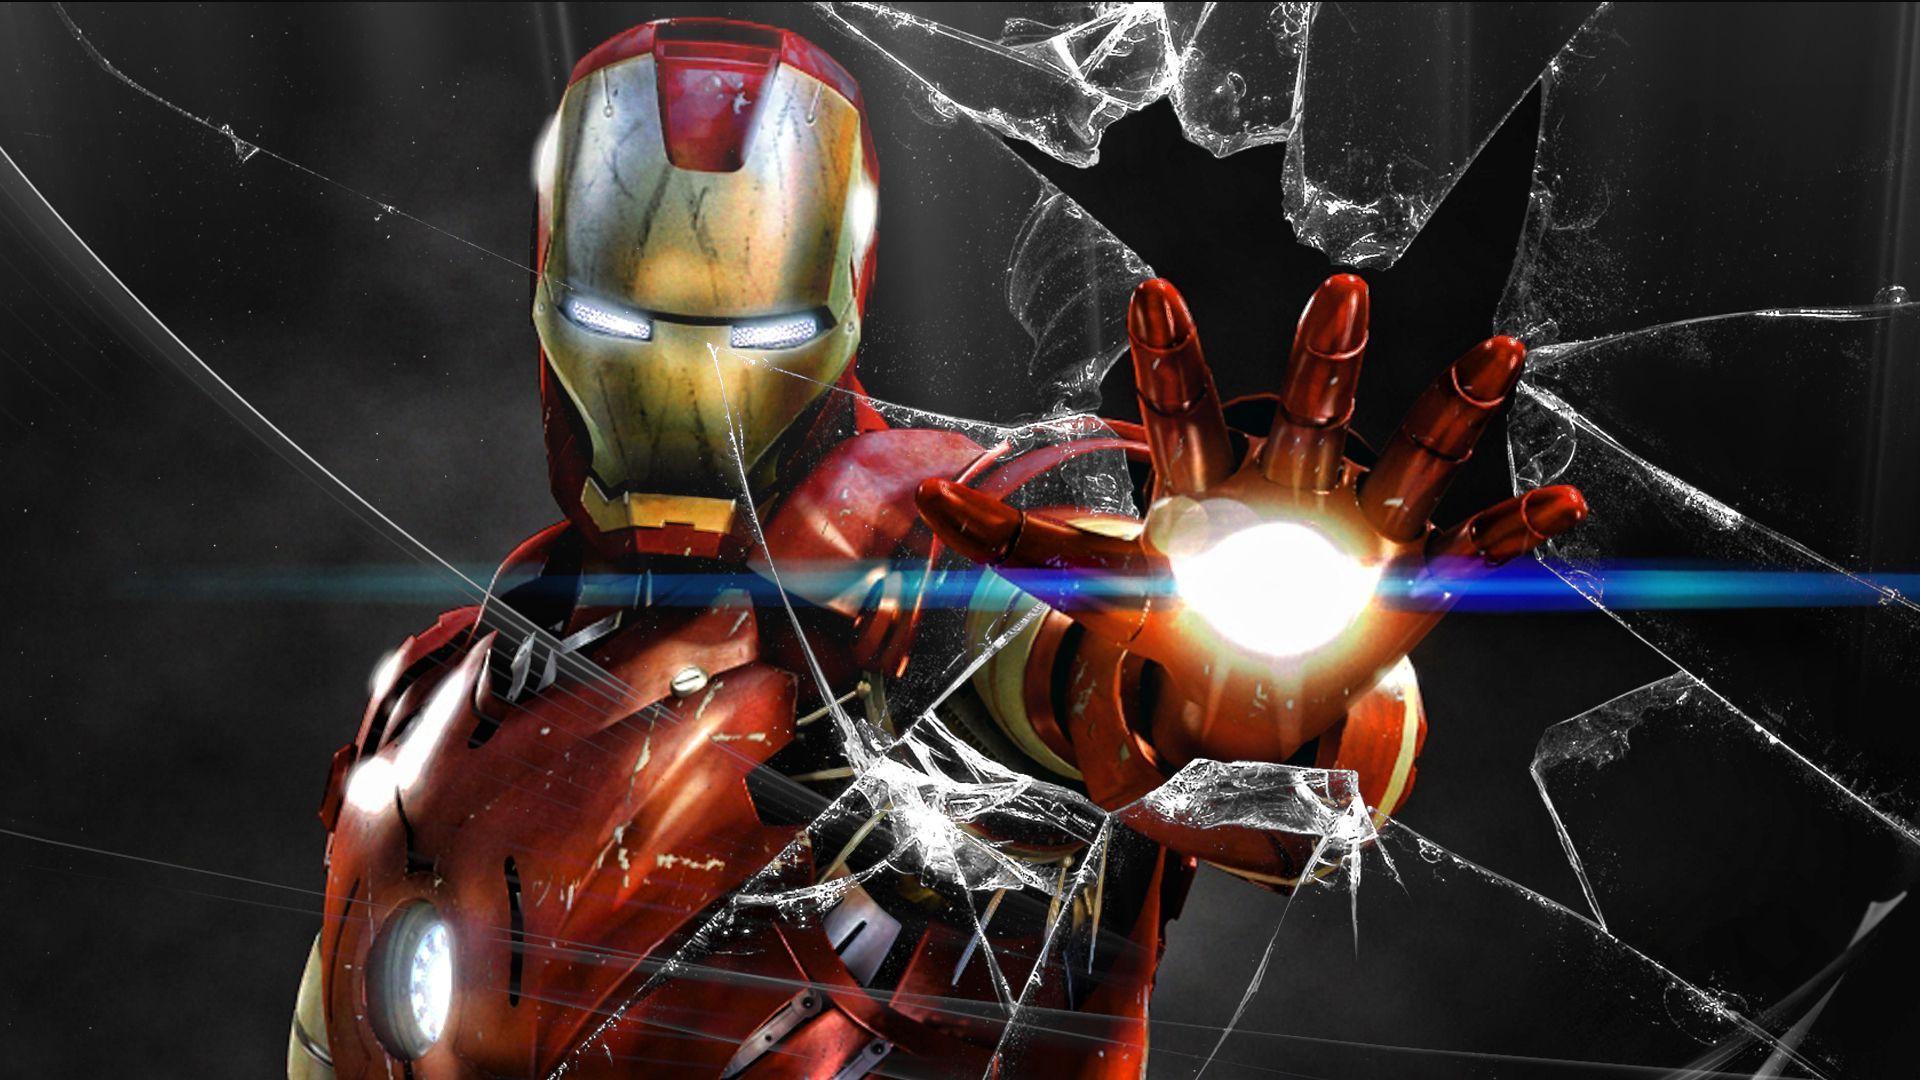 Hình nền Iron Man 4k sẽ đưa bạn vào một thế giới đầy kỳ tích, nơi siêu anh hùng Iron Man chống lại các kẻ thù và bảo vệ thế giới. Với chất lượng hình ảnh tuyệt vời, bạn sẽ thực sự cảm nhận được sức mạnh và sự vượt trội của Iron Man.